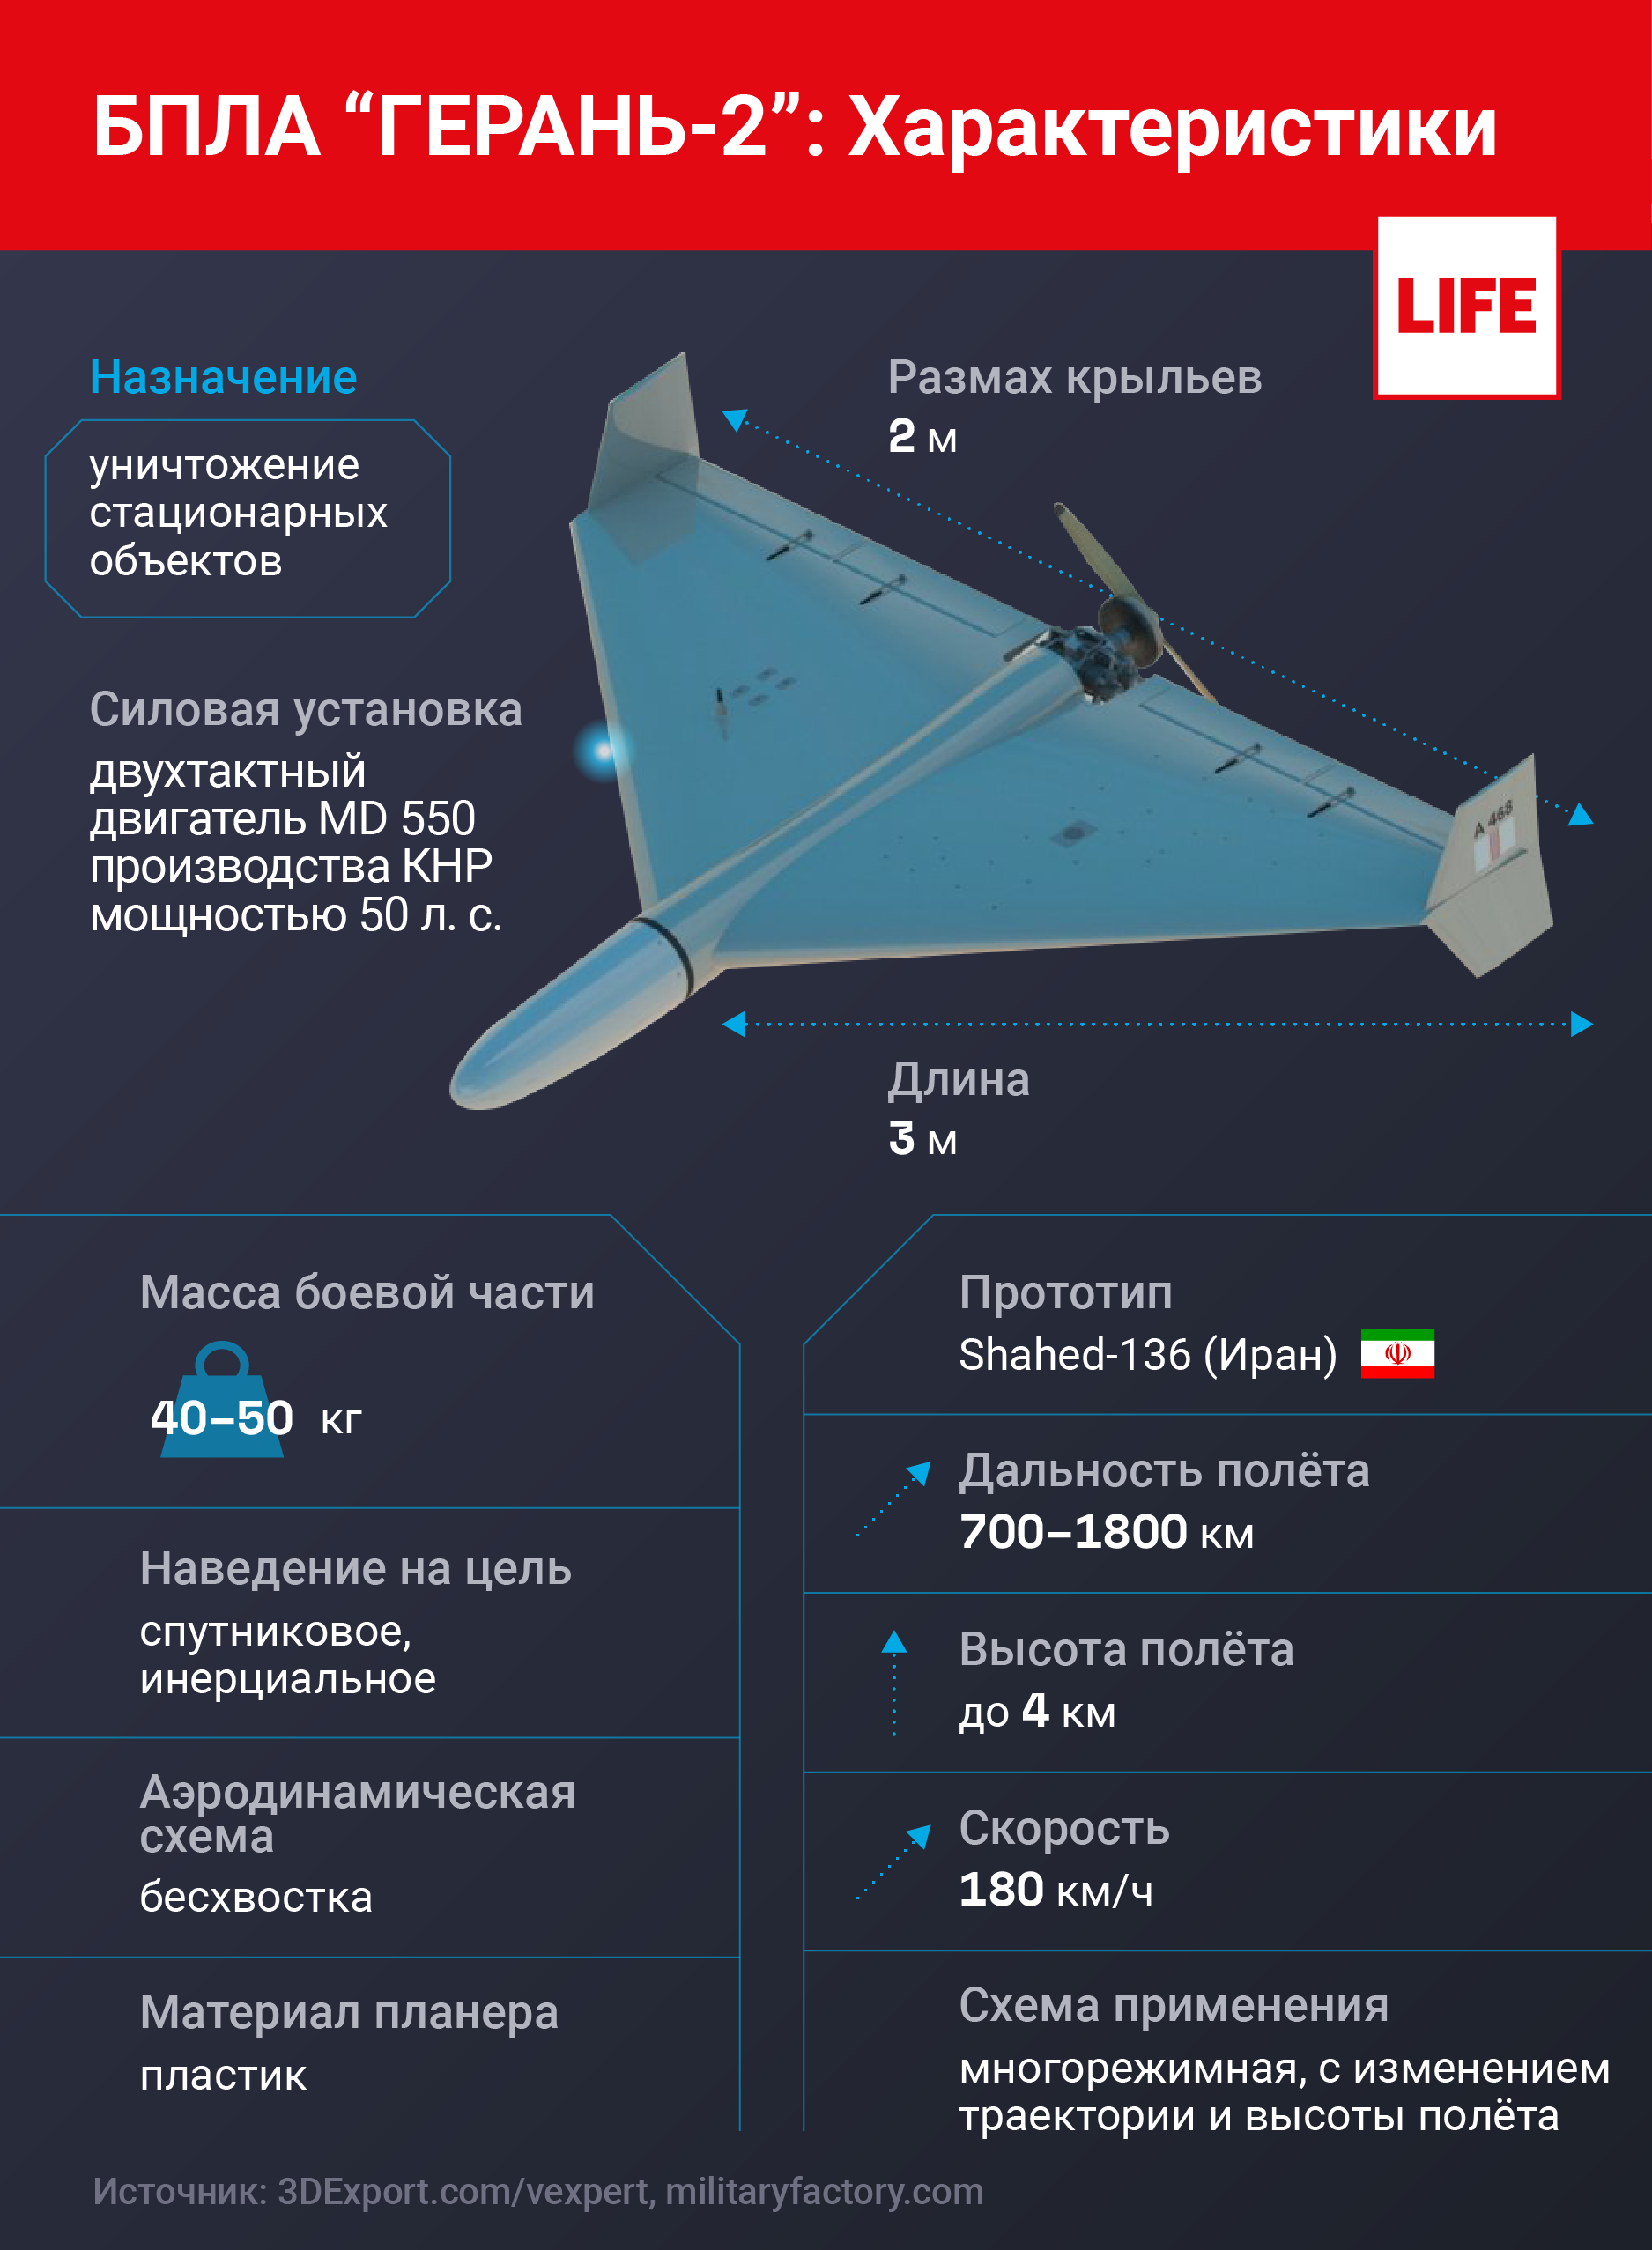 Технические характеристики беспилотника "Герань-2" и его главные преимущества. Инфографика © LIFE